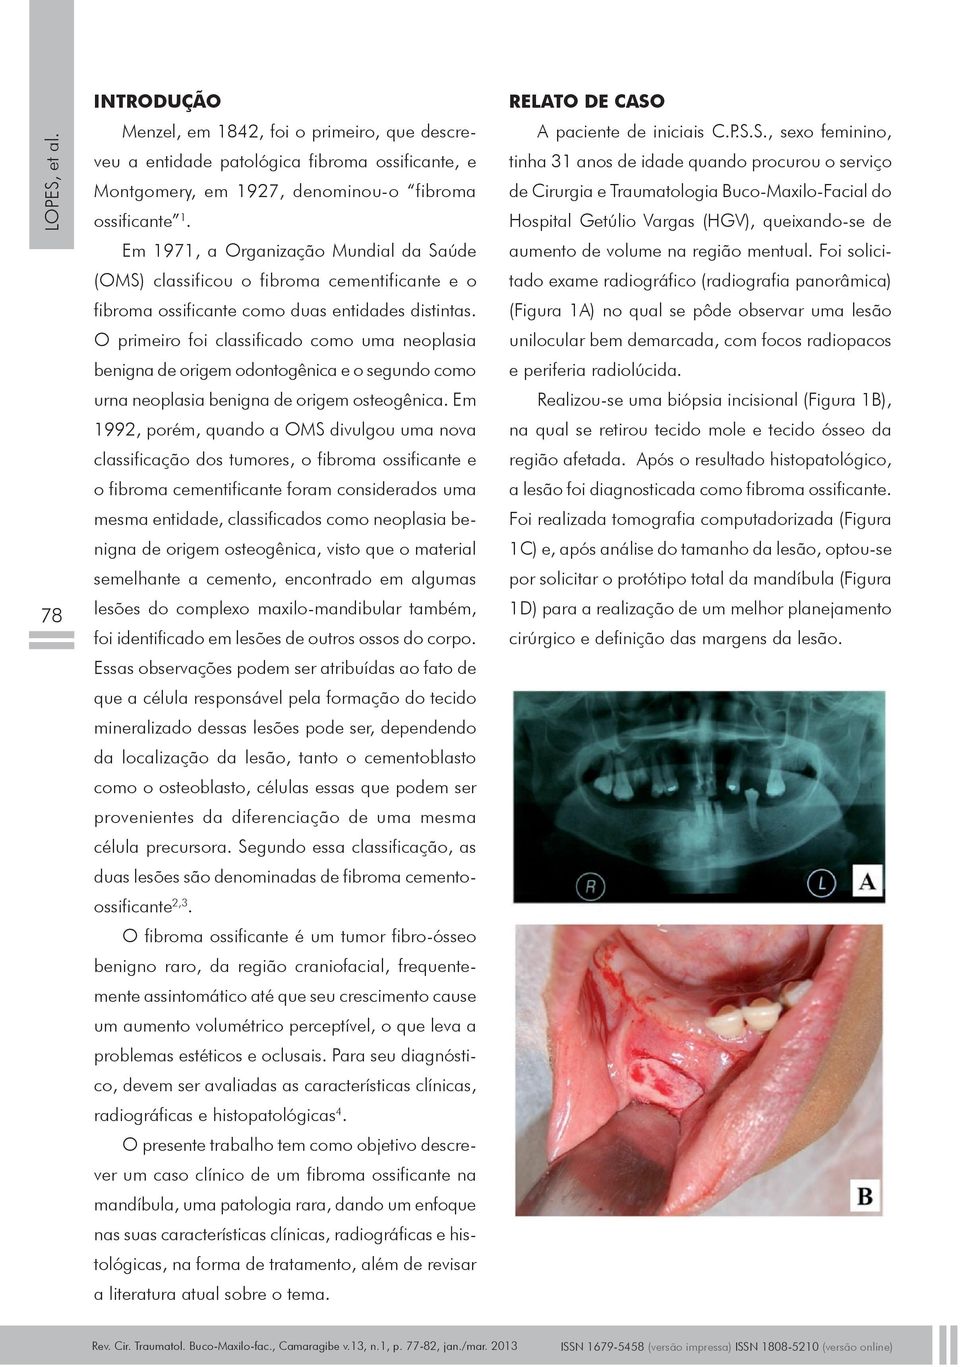 O primeiro foi classificado como uma neoplasia benigna de origem odontogênica e o segundo como urna neoplasia benigna de origem osteogênica.